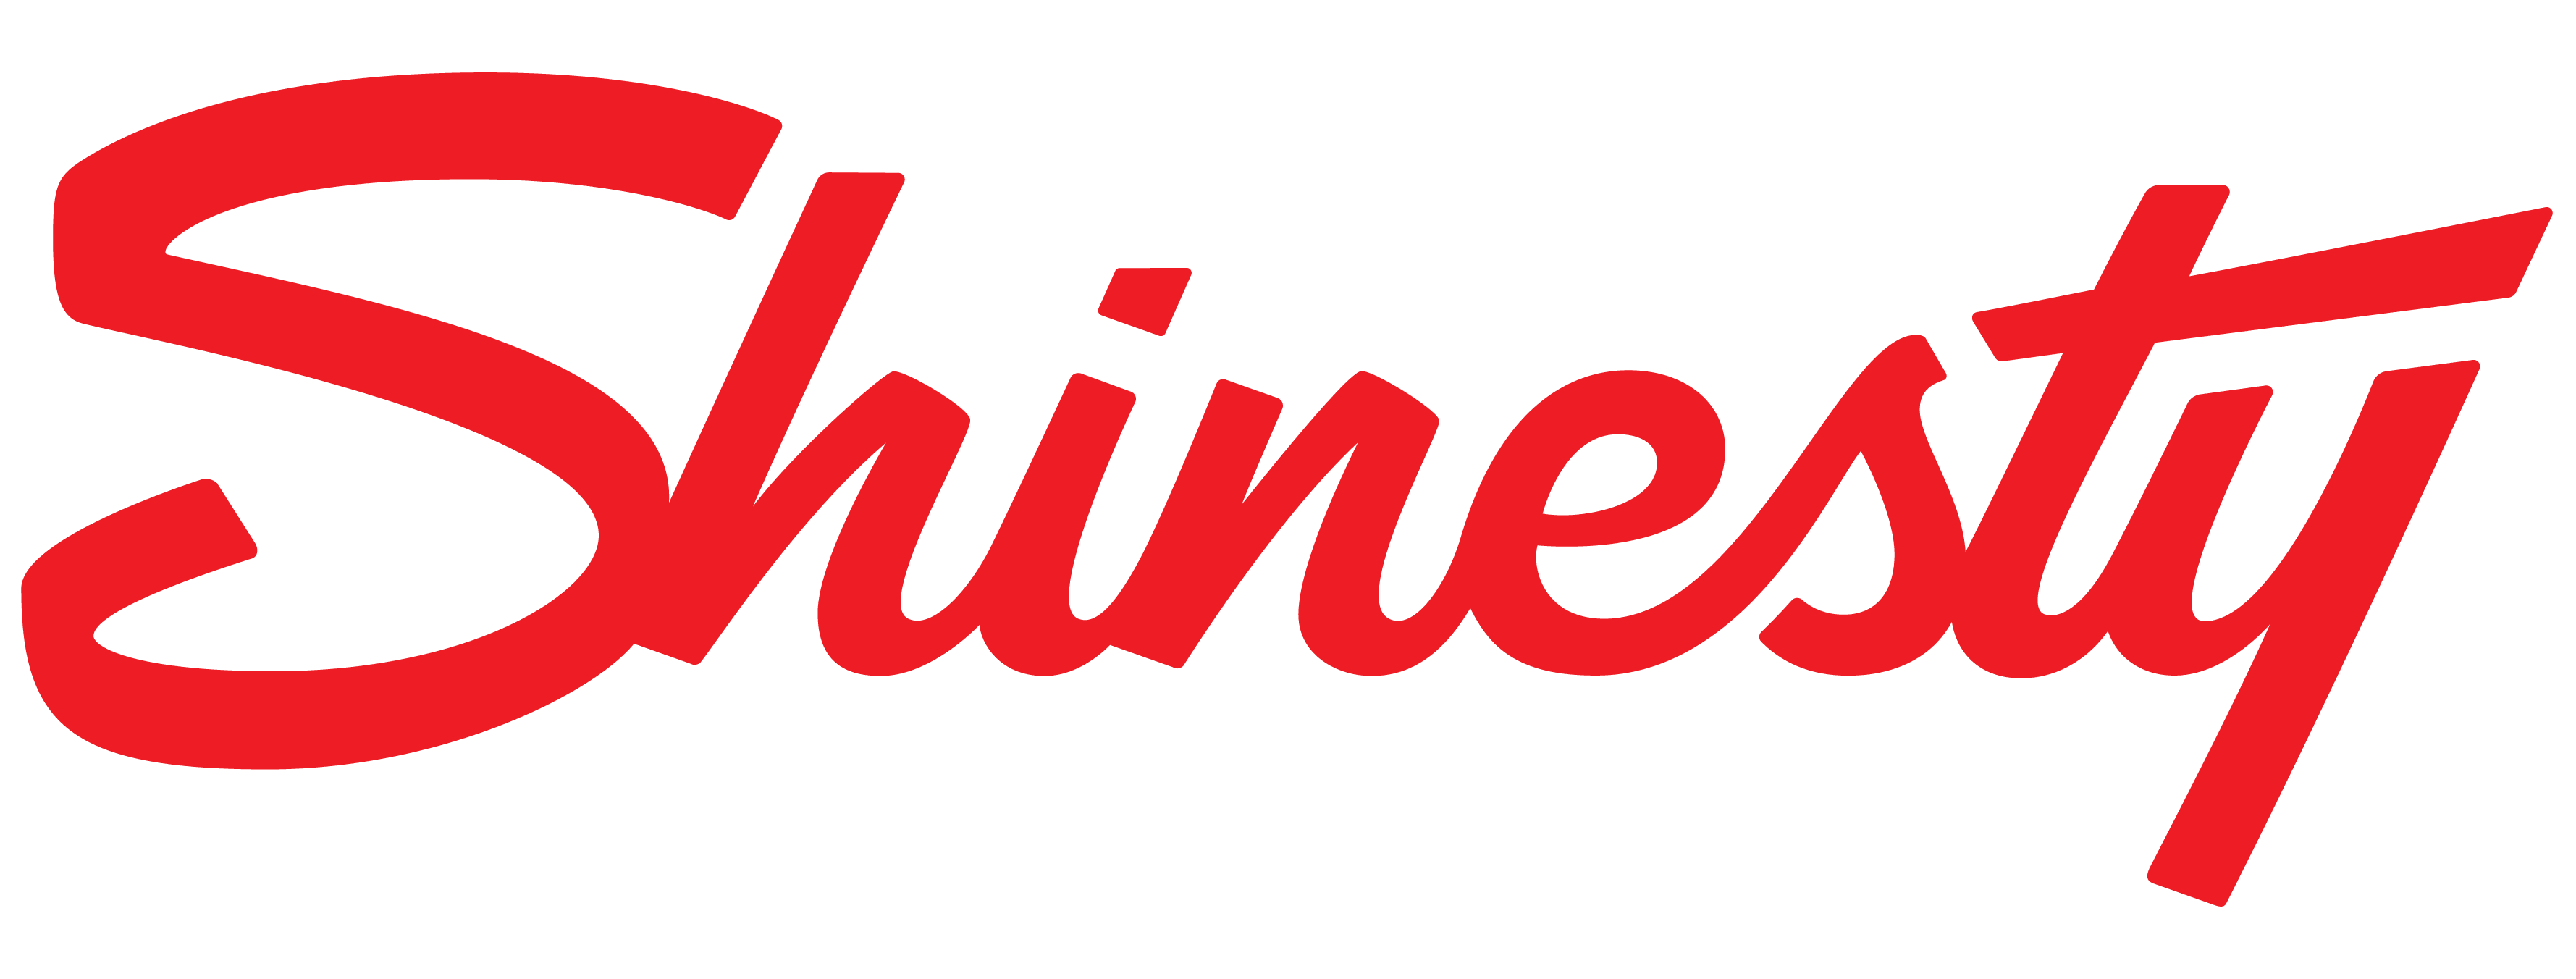 Shinesty logo